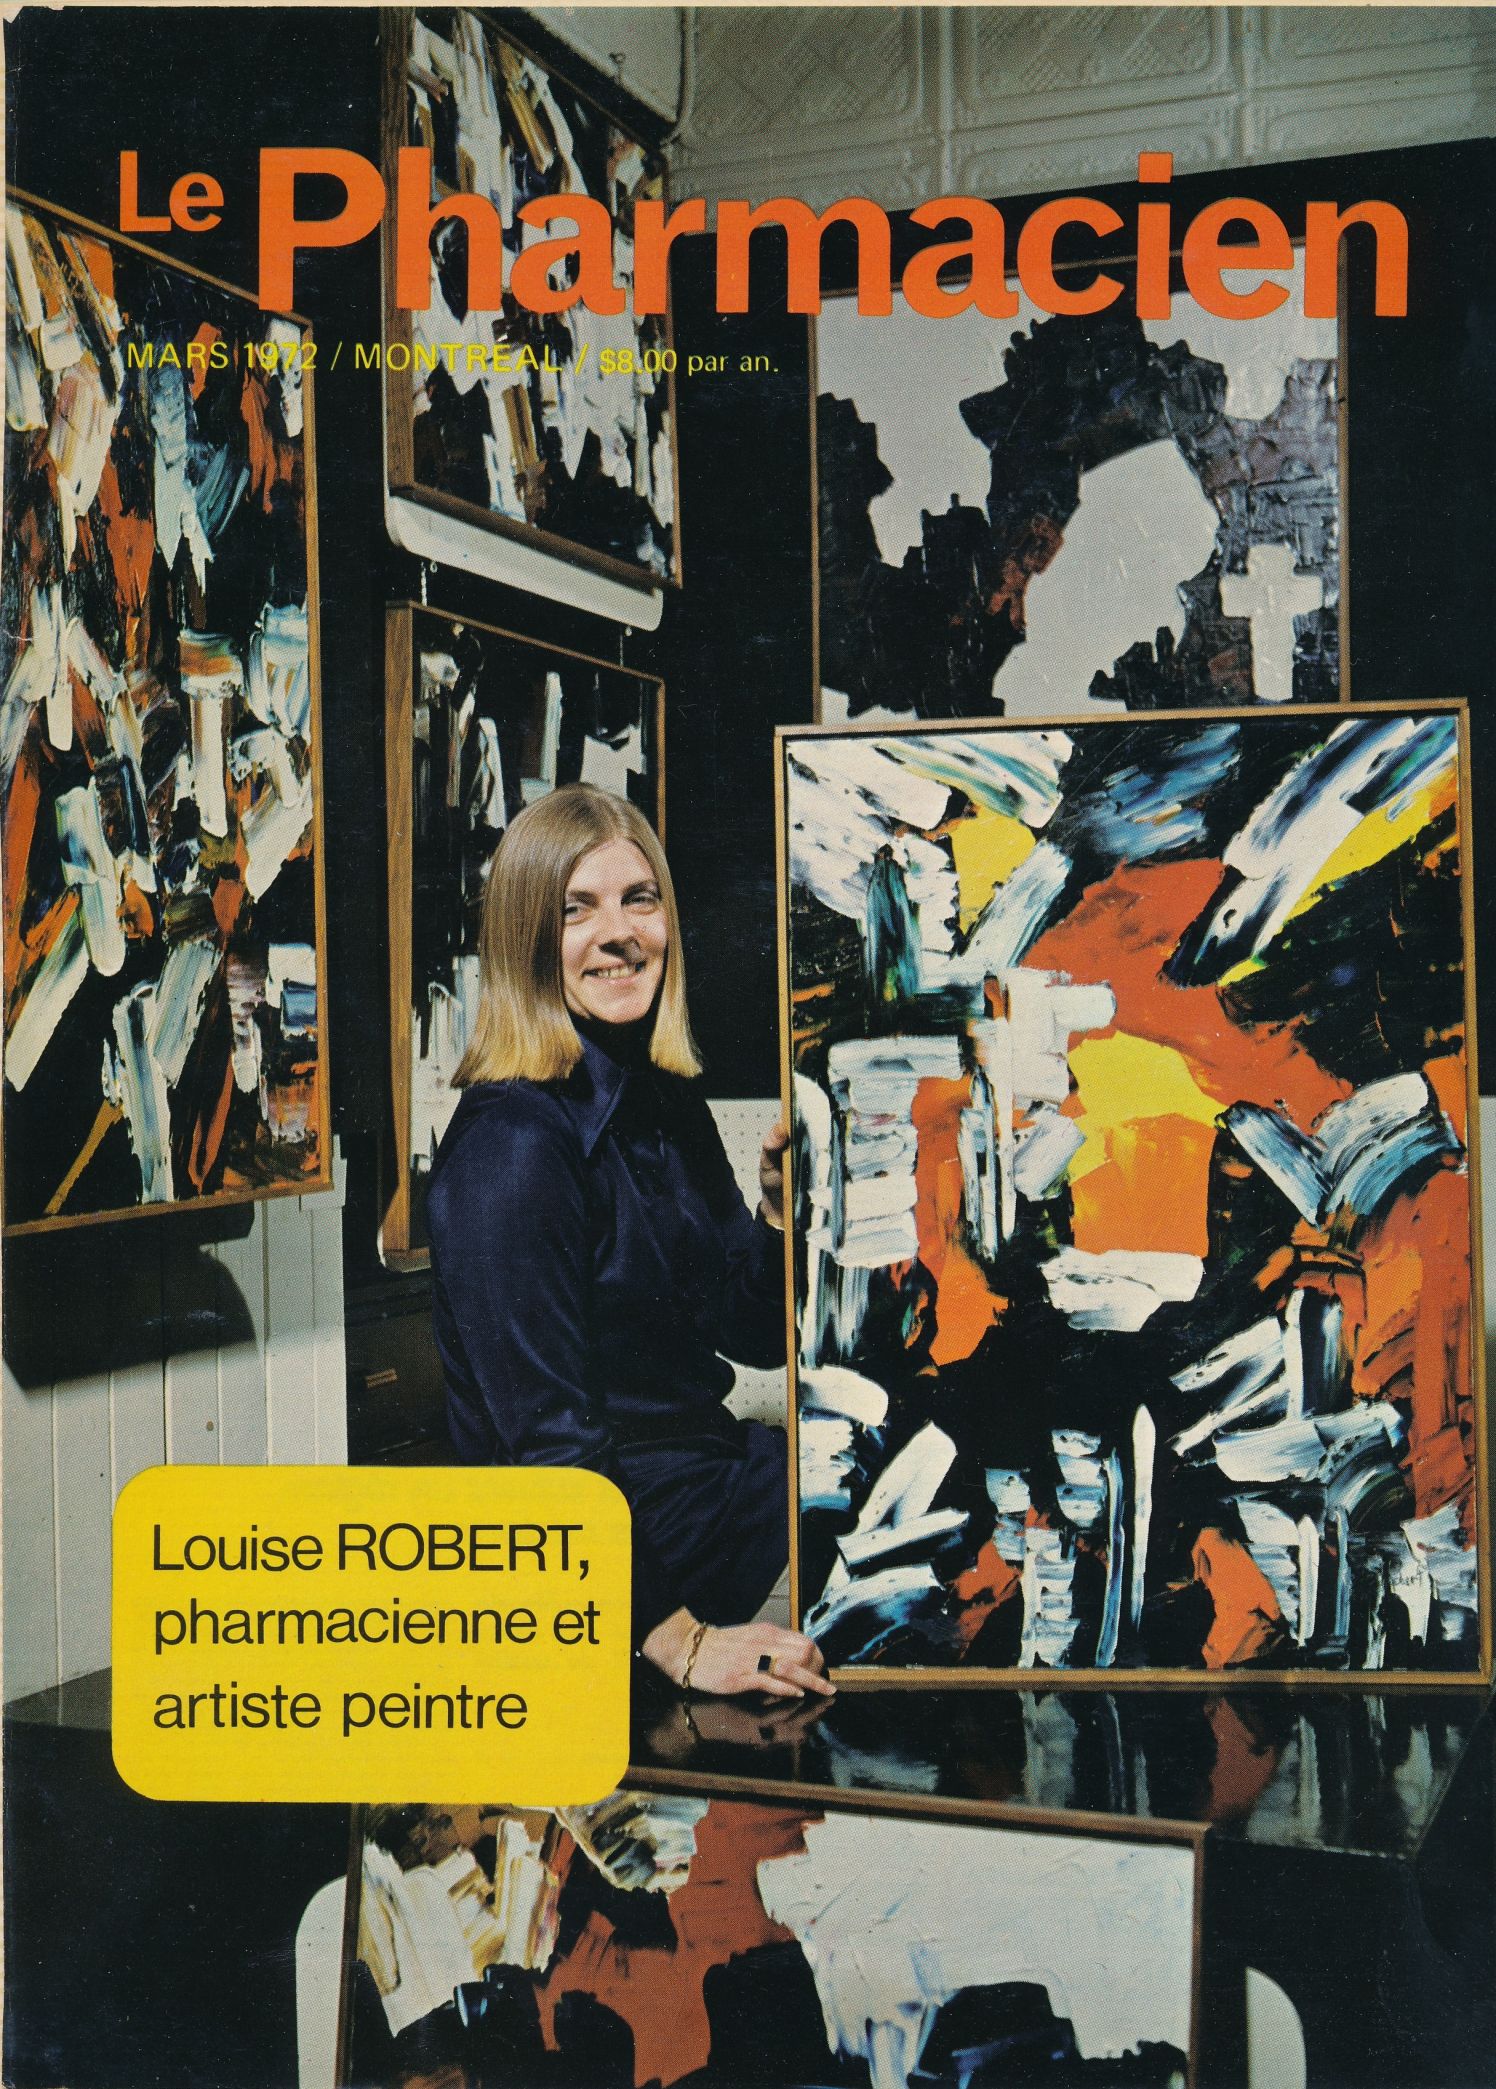 Louise Robert dans son atelier, rue Harvard. Photos parues dans « Louise Robert, pharmacienne et artiste peintre », Le Pharmacien (Montréal), mars 1972.